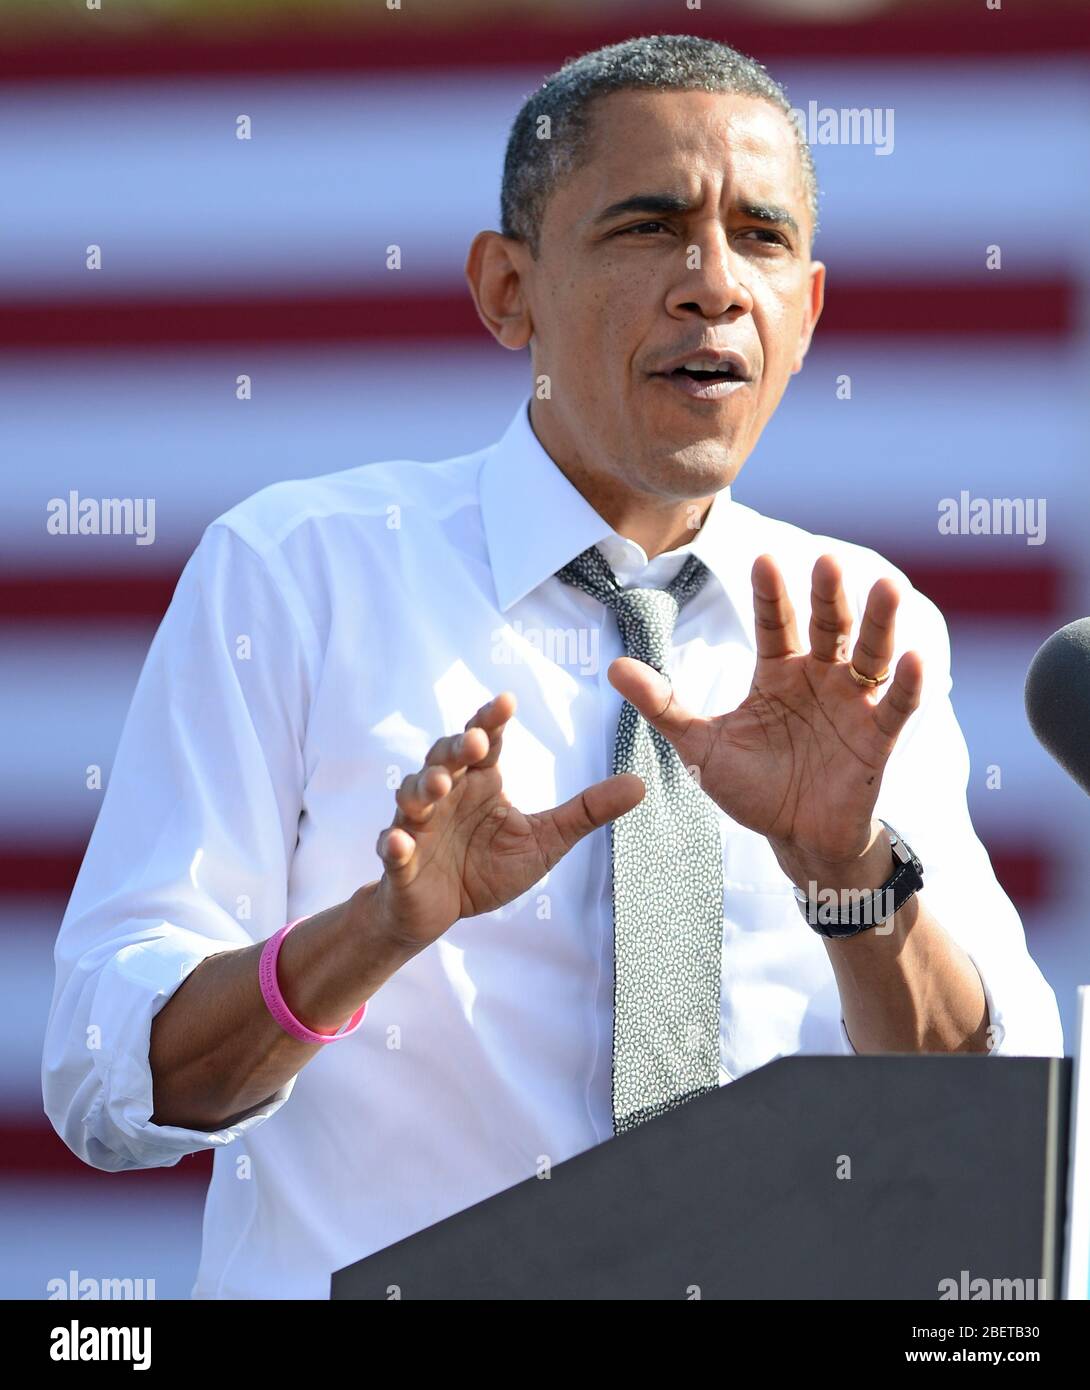 DELRAY BEACH FL- OTTOBRE 23: IL Presidente DEGLI STATI UNITI Barack Obama parla durante un evento della campagna Grassroots al Delray Beach Tennis Center il 23 Ottobre 2012 in Foto Stock